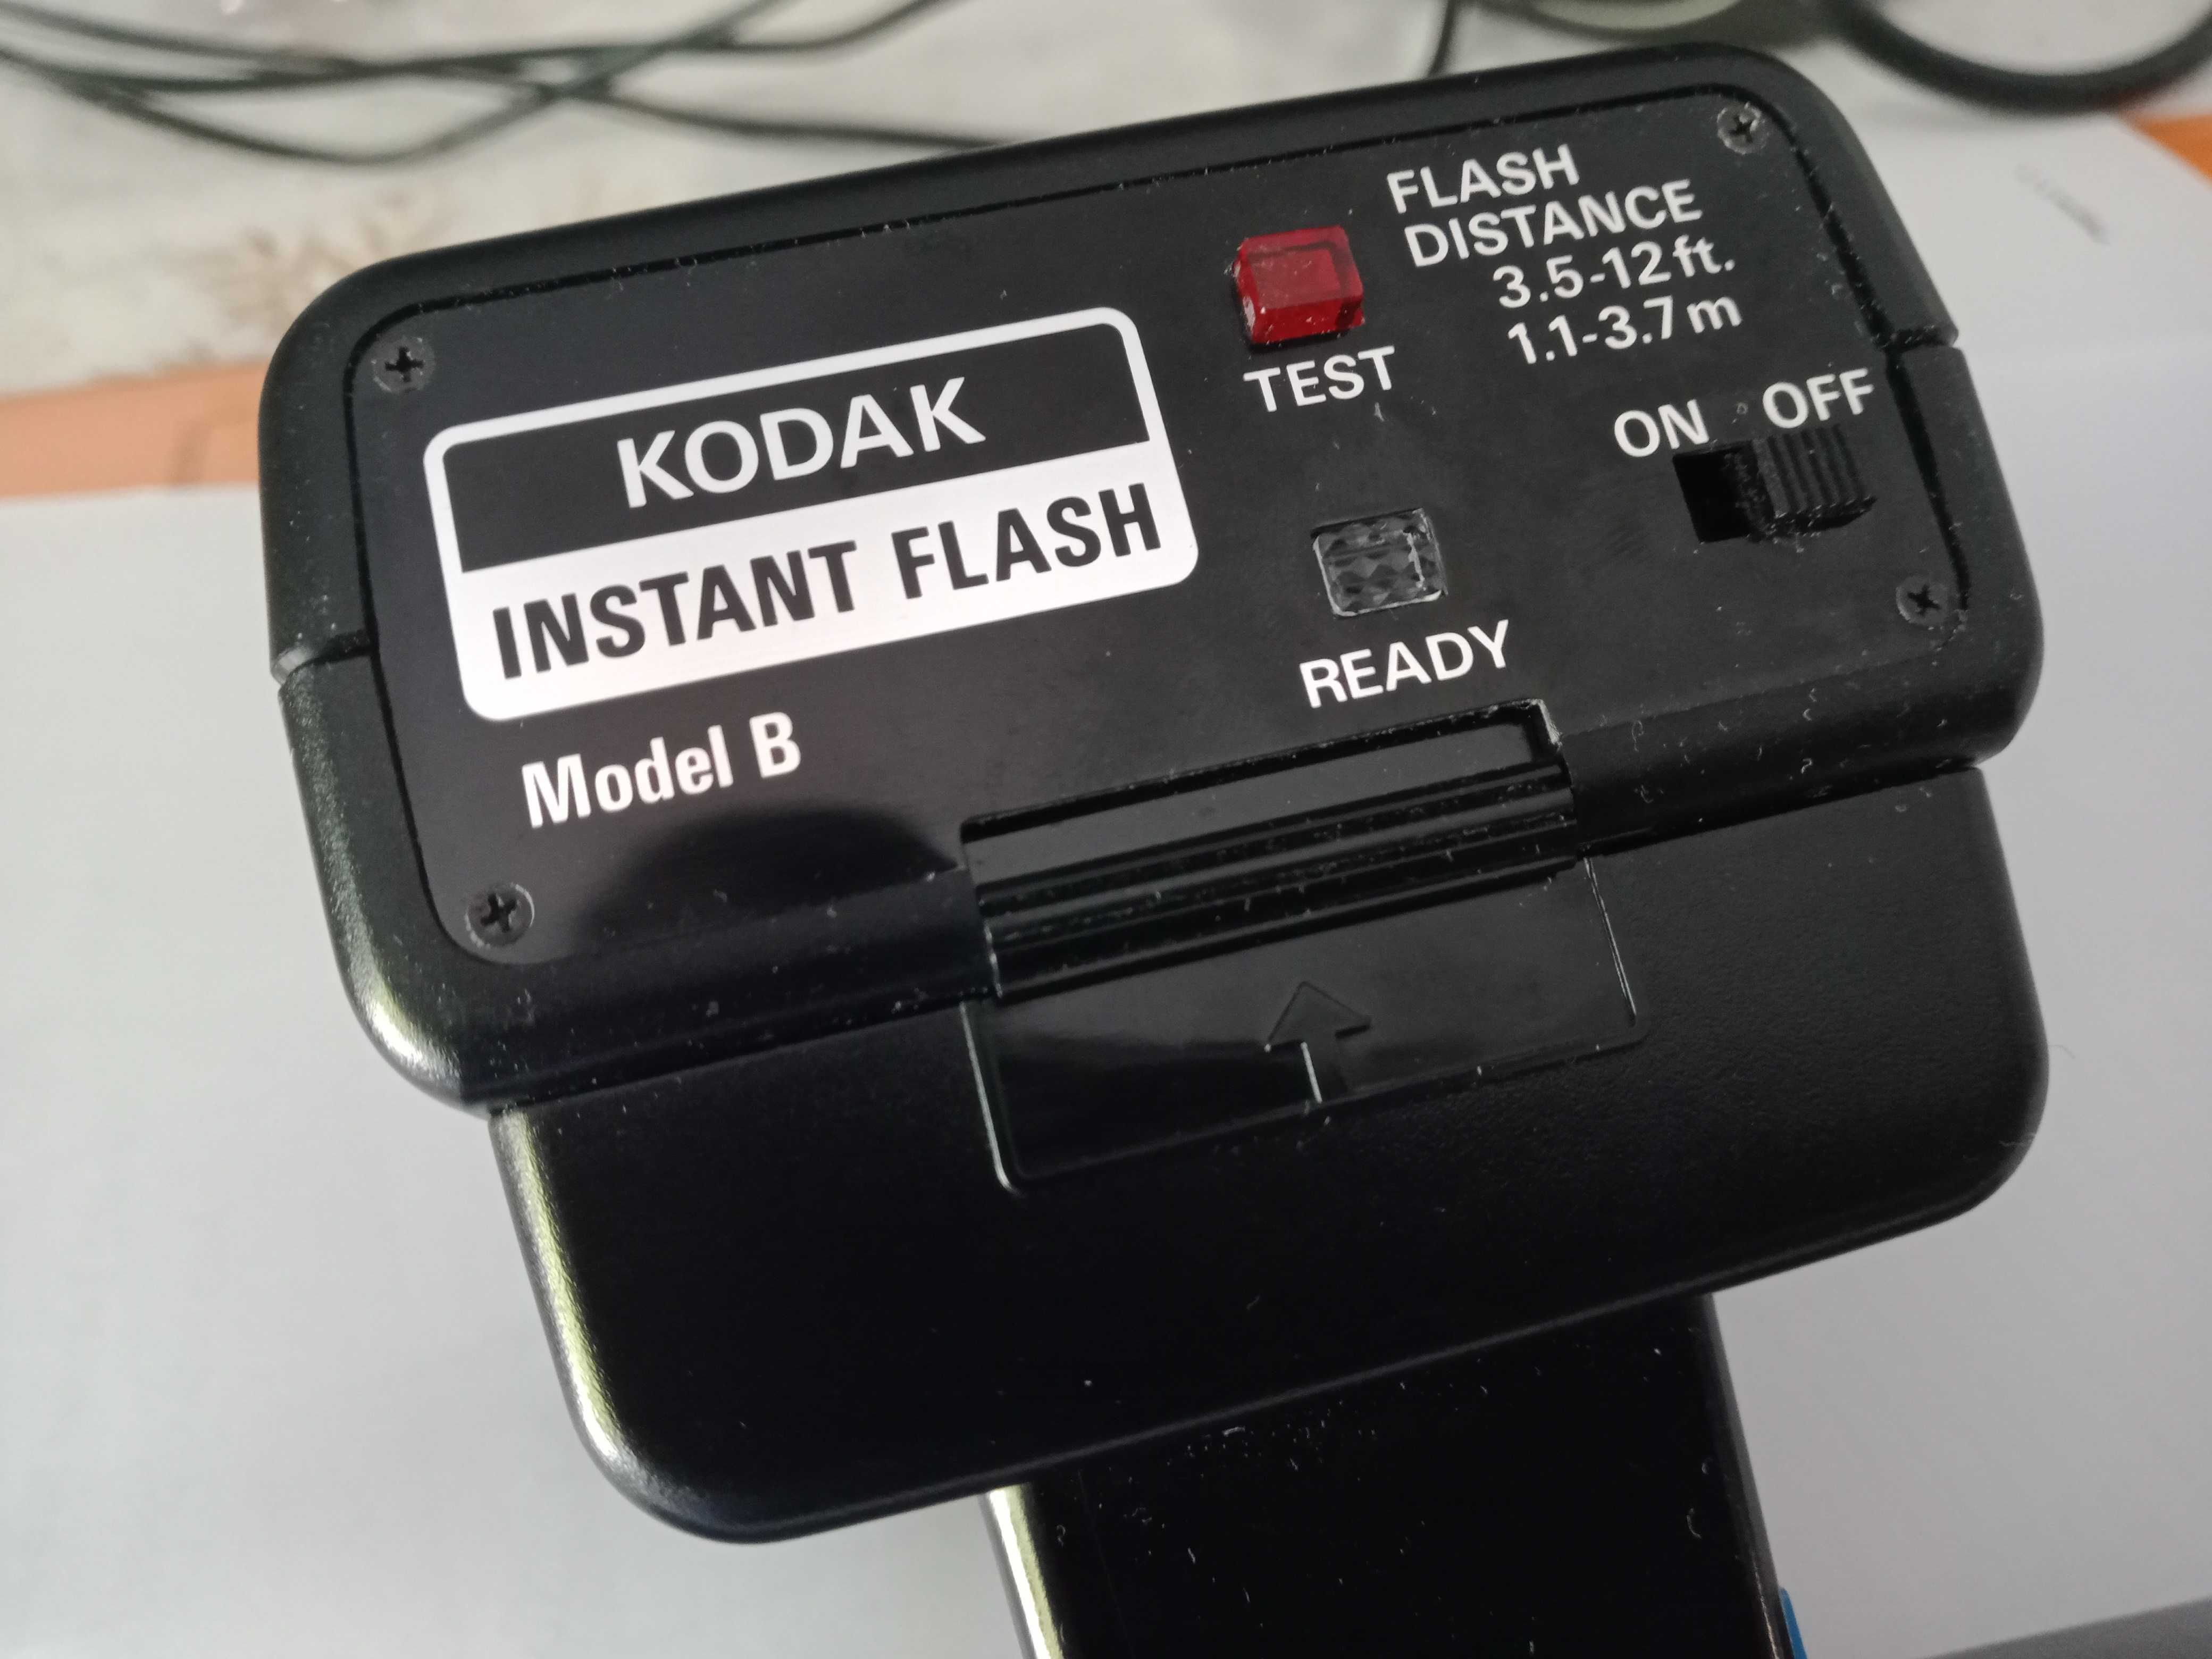 Flash KODAK Instant Flash Model B